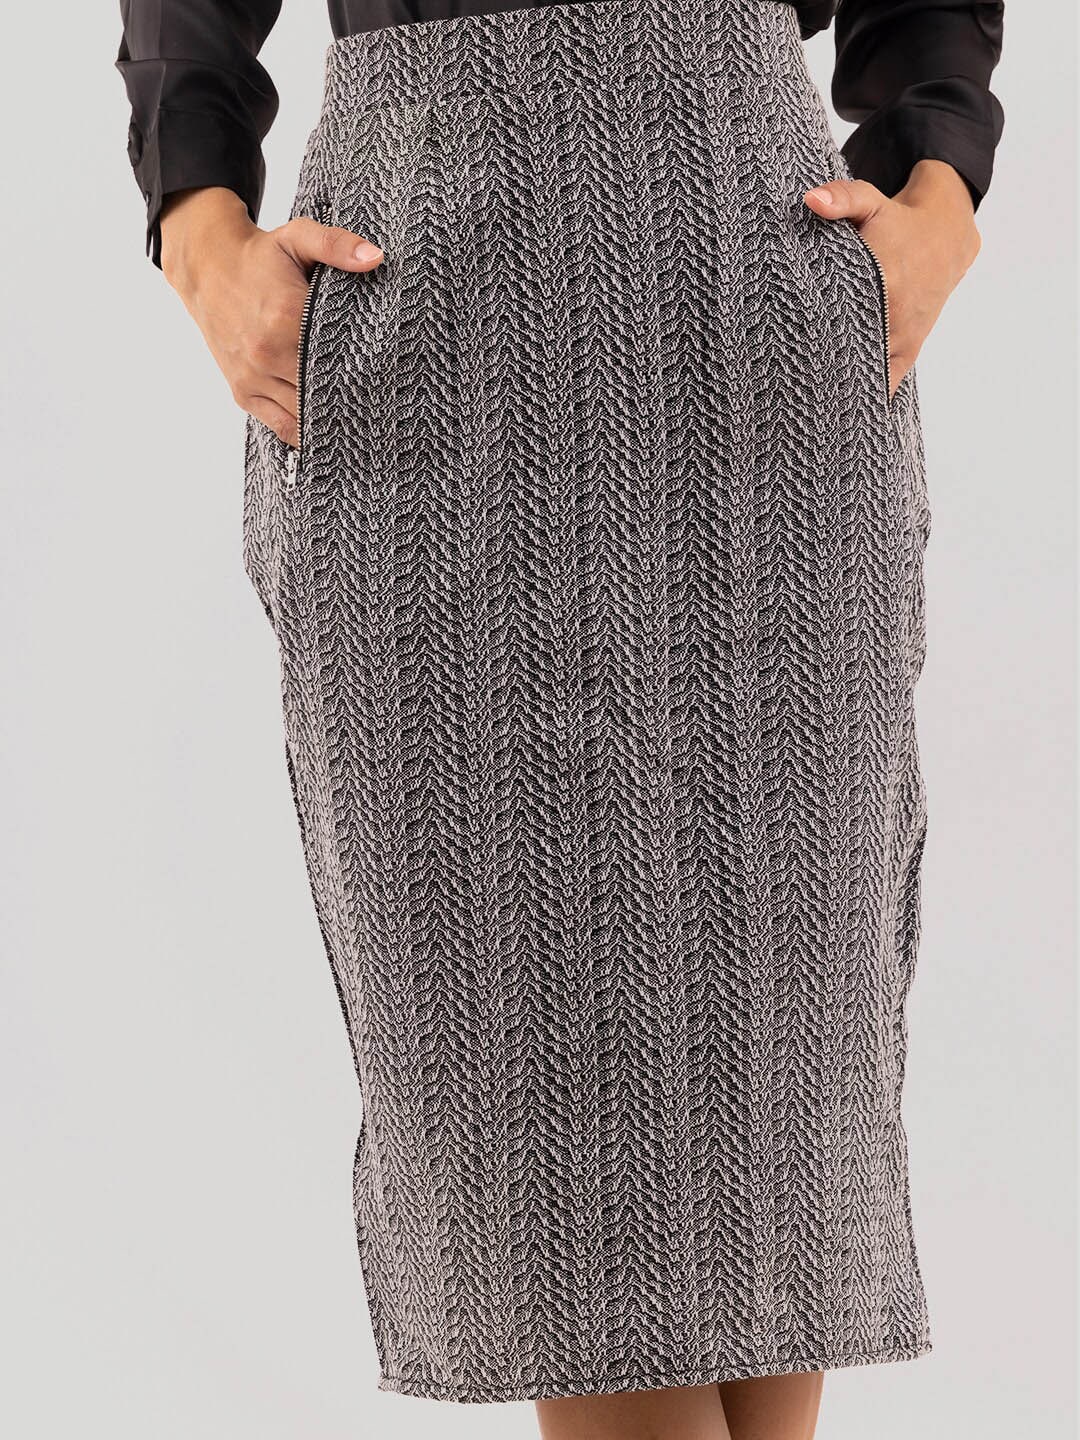 Samshek Self-Design Straight Midi Skirt Price in India